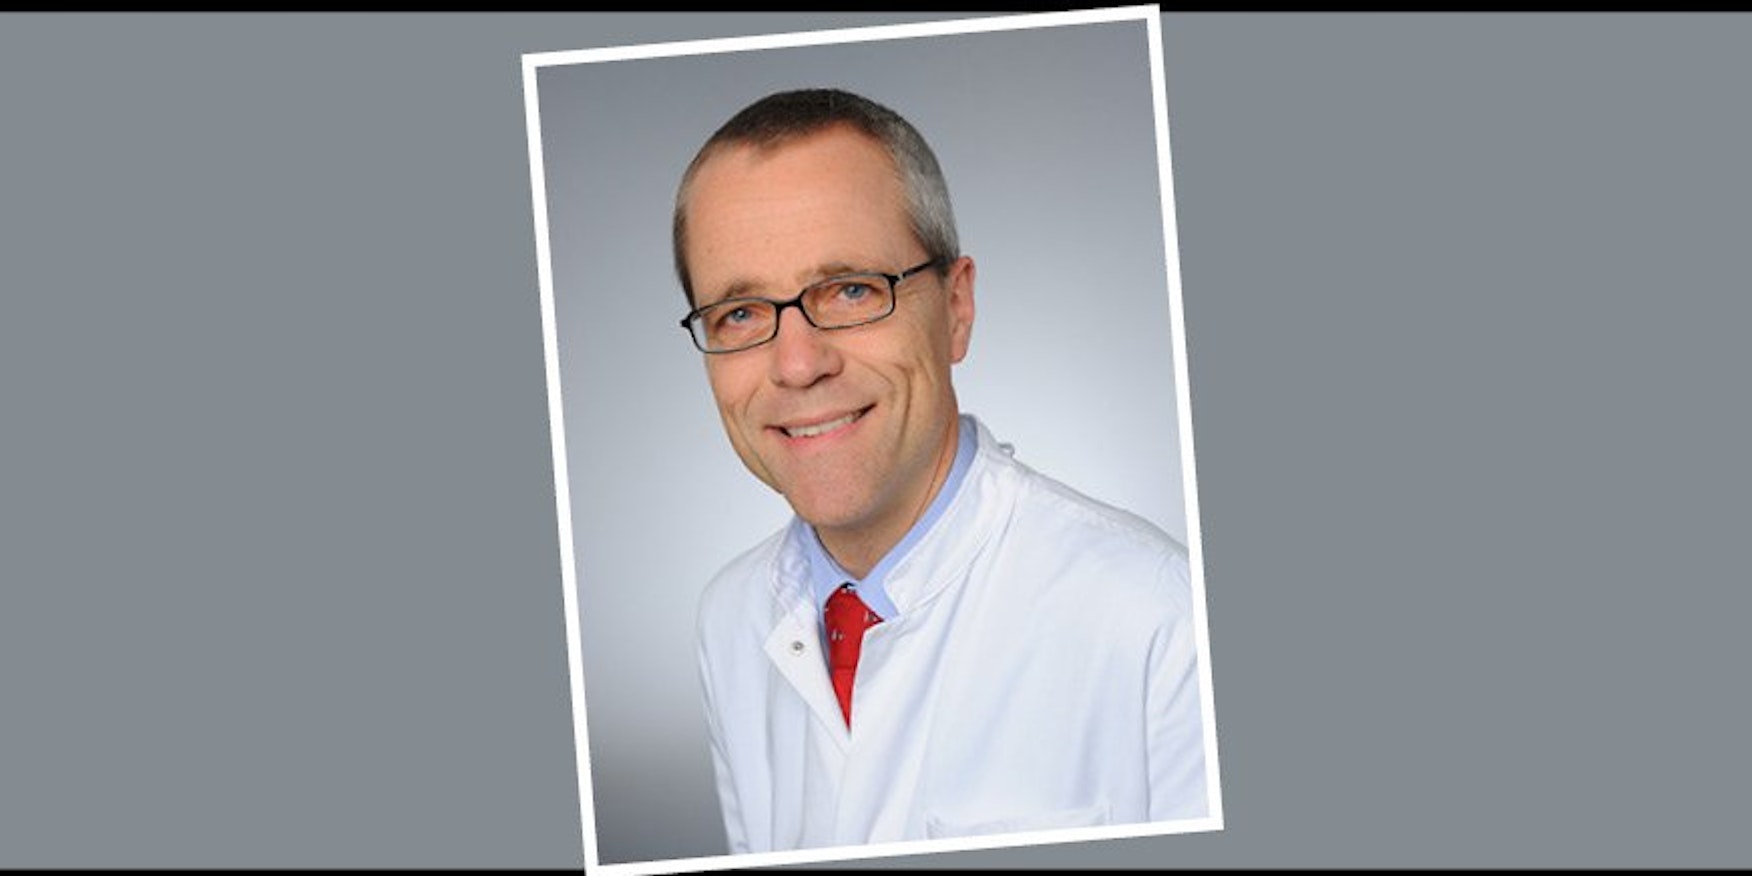 Gereon Fink ist Professor für Neurologie und Direktor der Klinik und Poliklinik für Neurologie an der Uniklinik Köln.